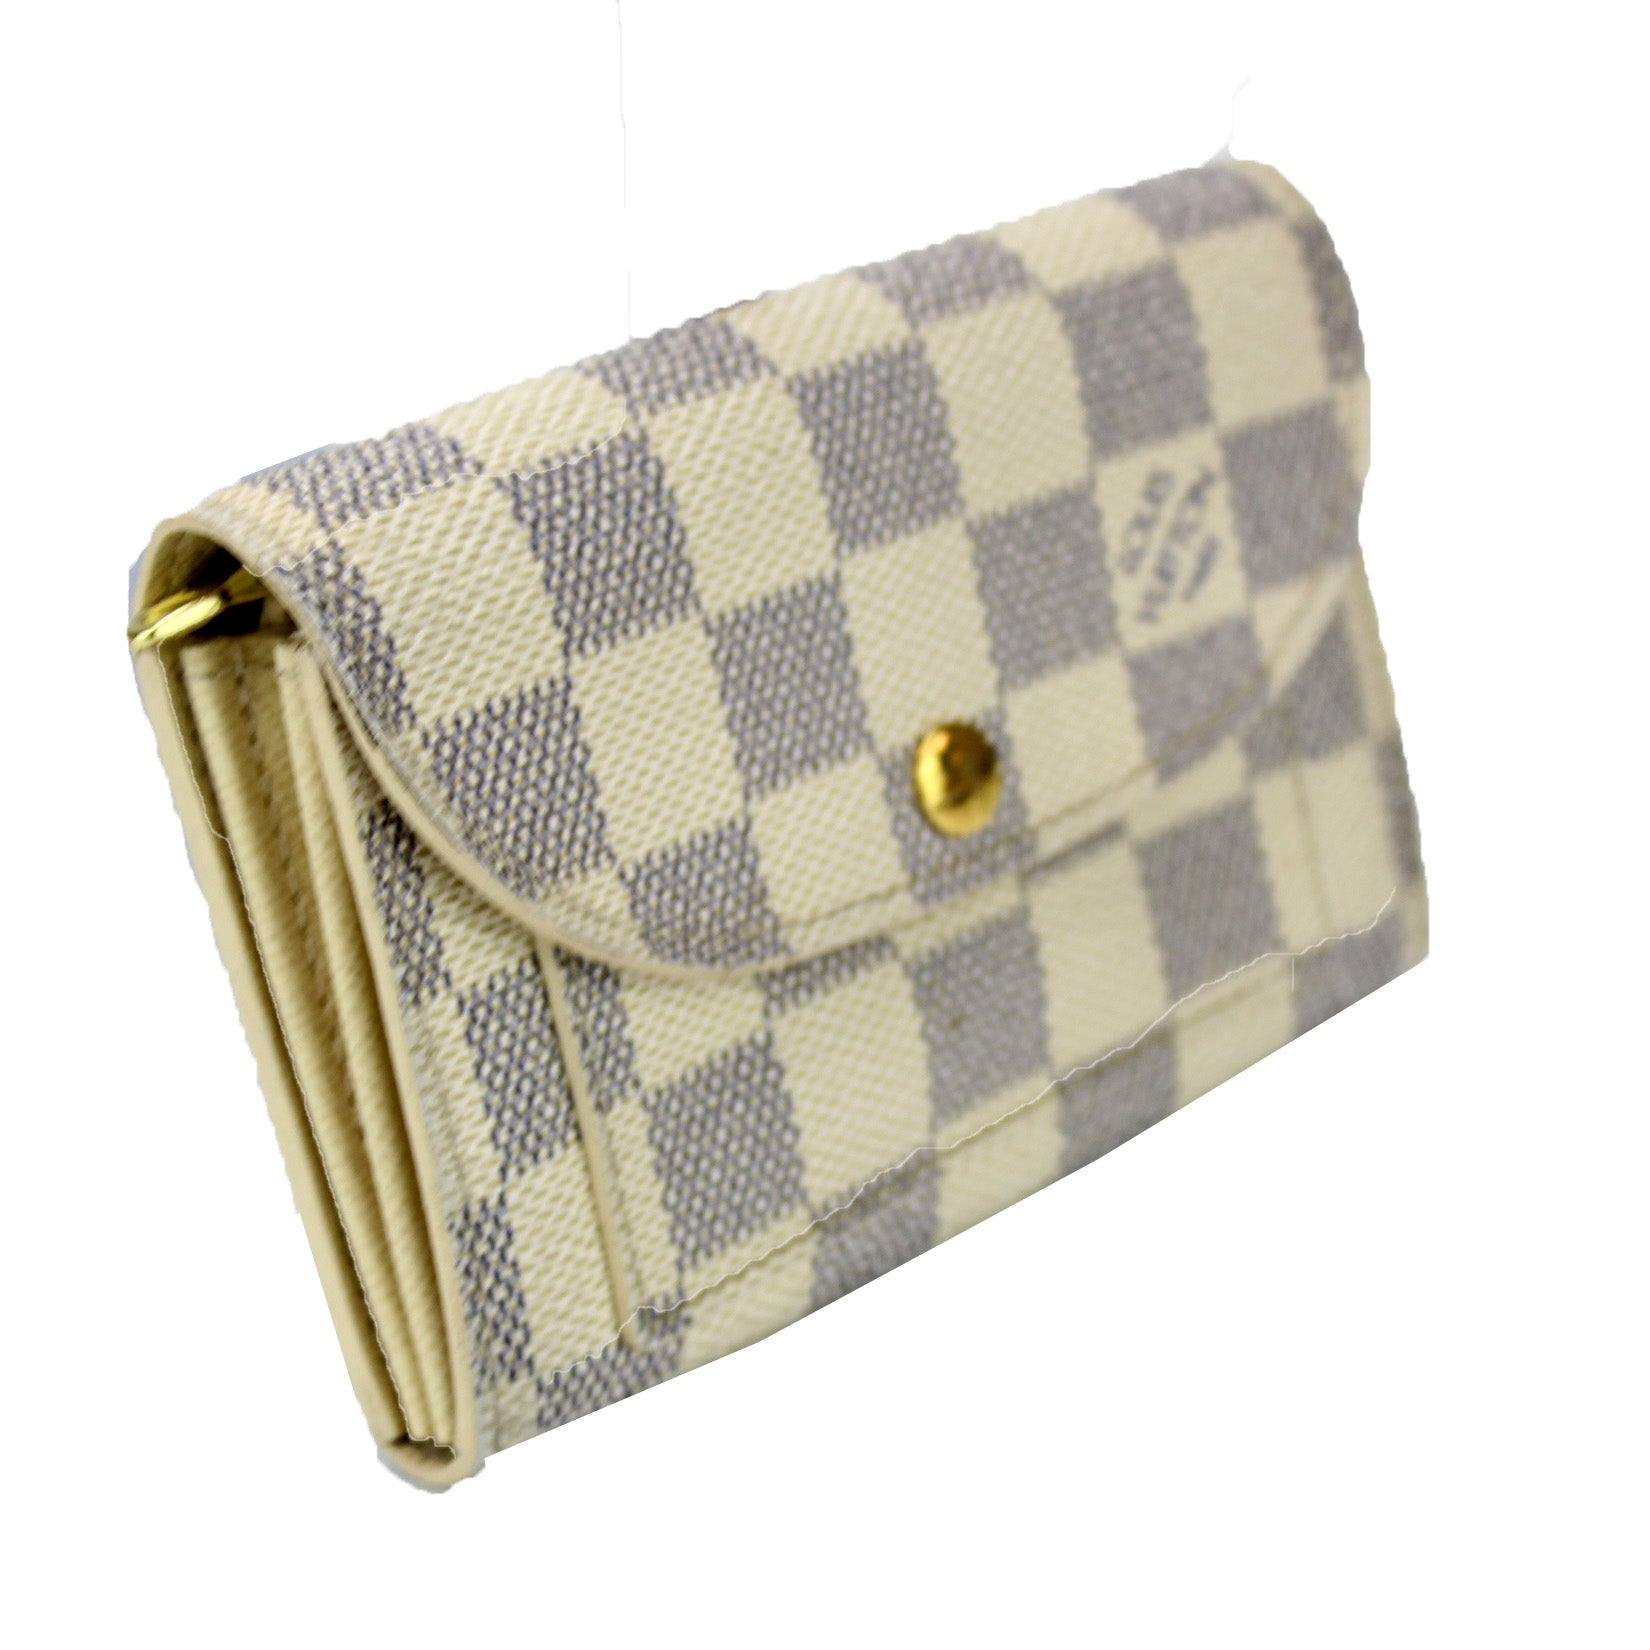 Louis Vuitton Damier Azur Pochette Solo Belt Bag Louis Vuitton